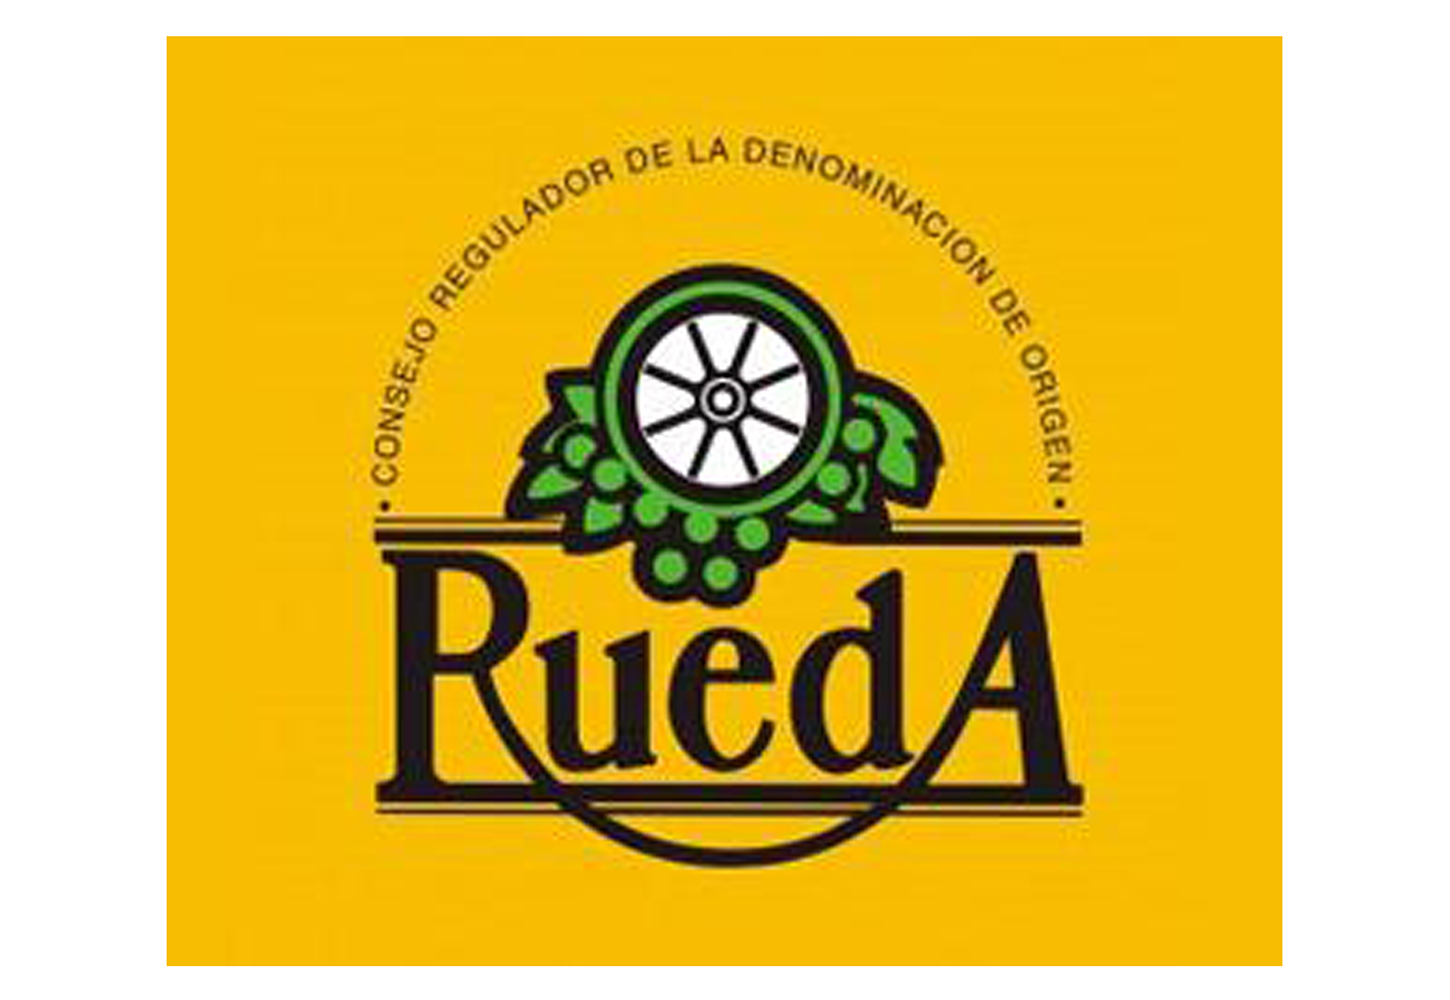 Rueda logo